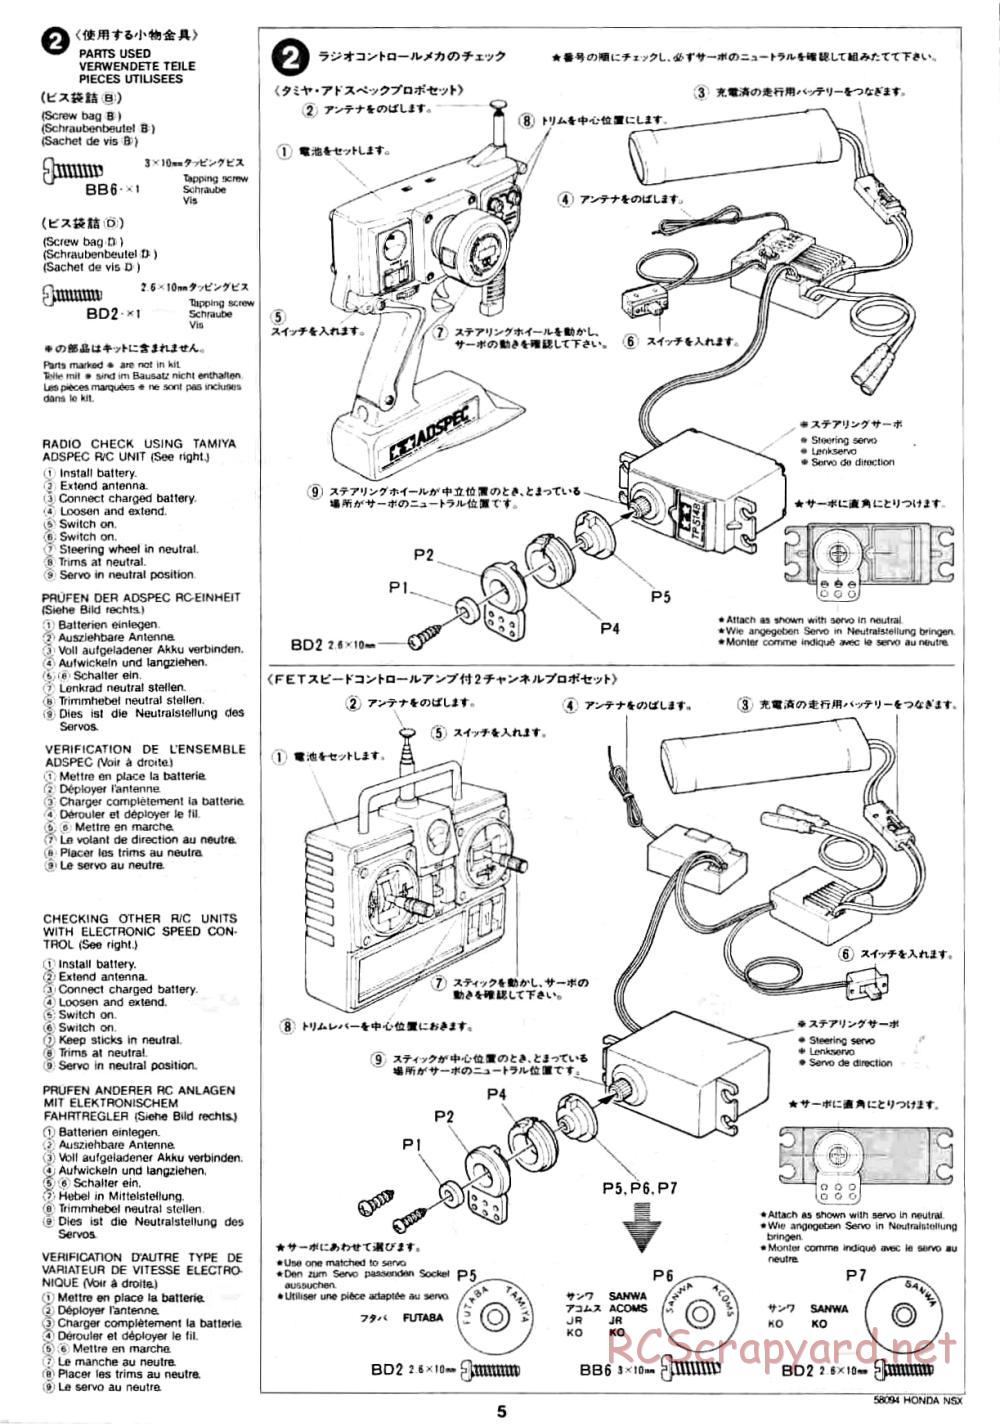 Tamiya - Honda NSX - 58094 - Manual - Page 5